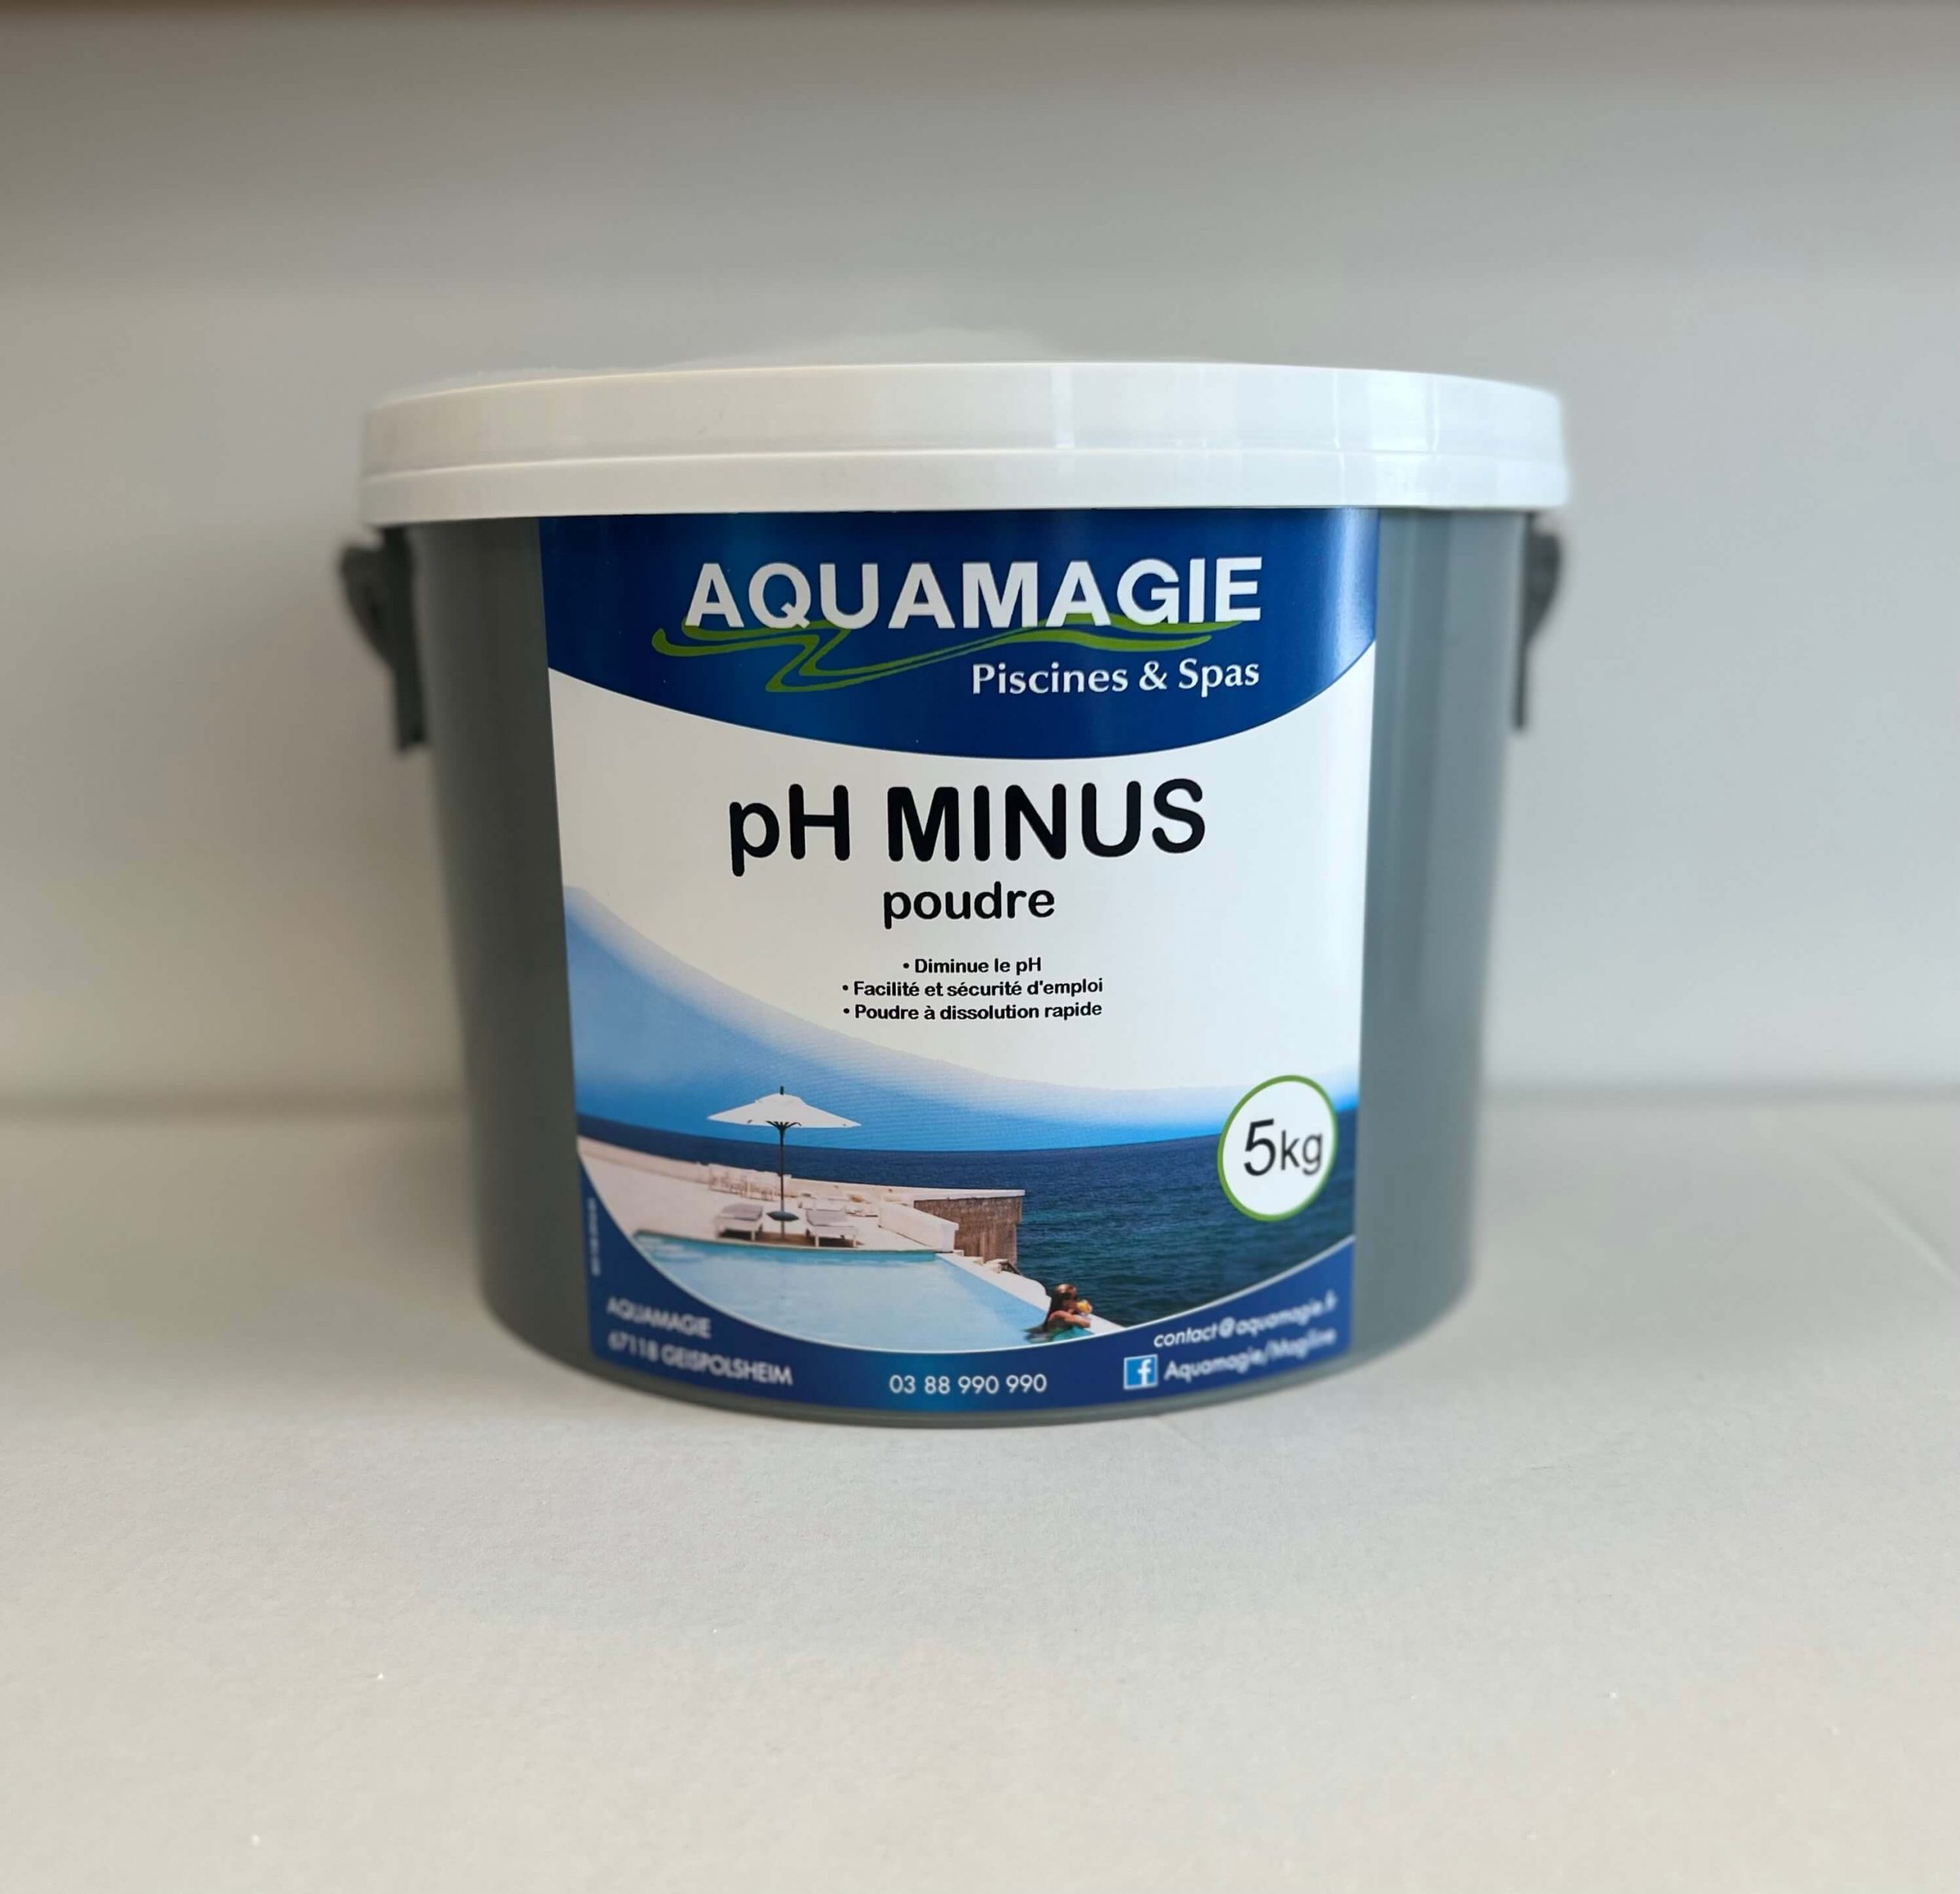 Aquamagie – PH MINUS POUDRE 5KG